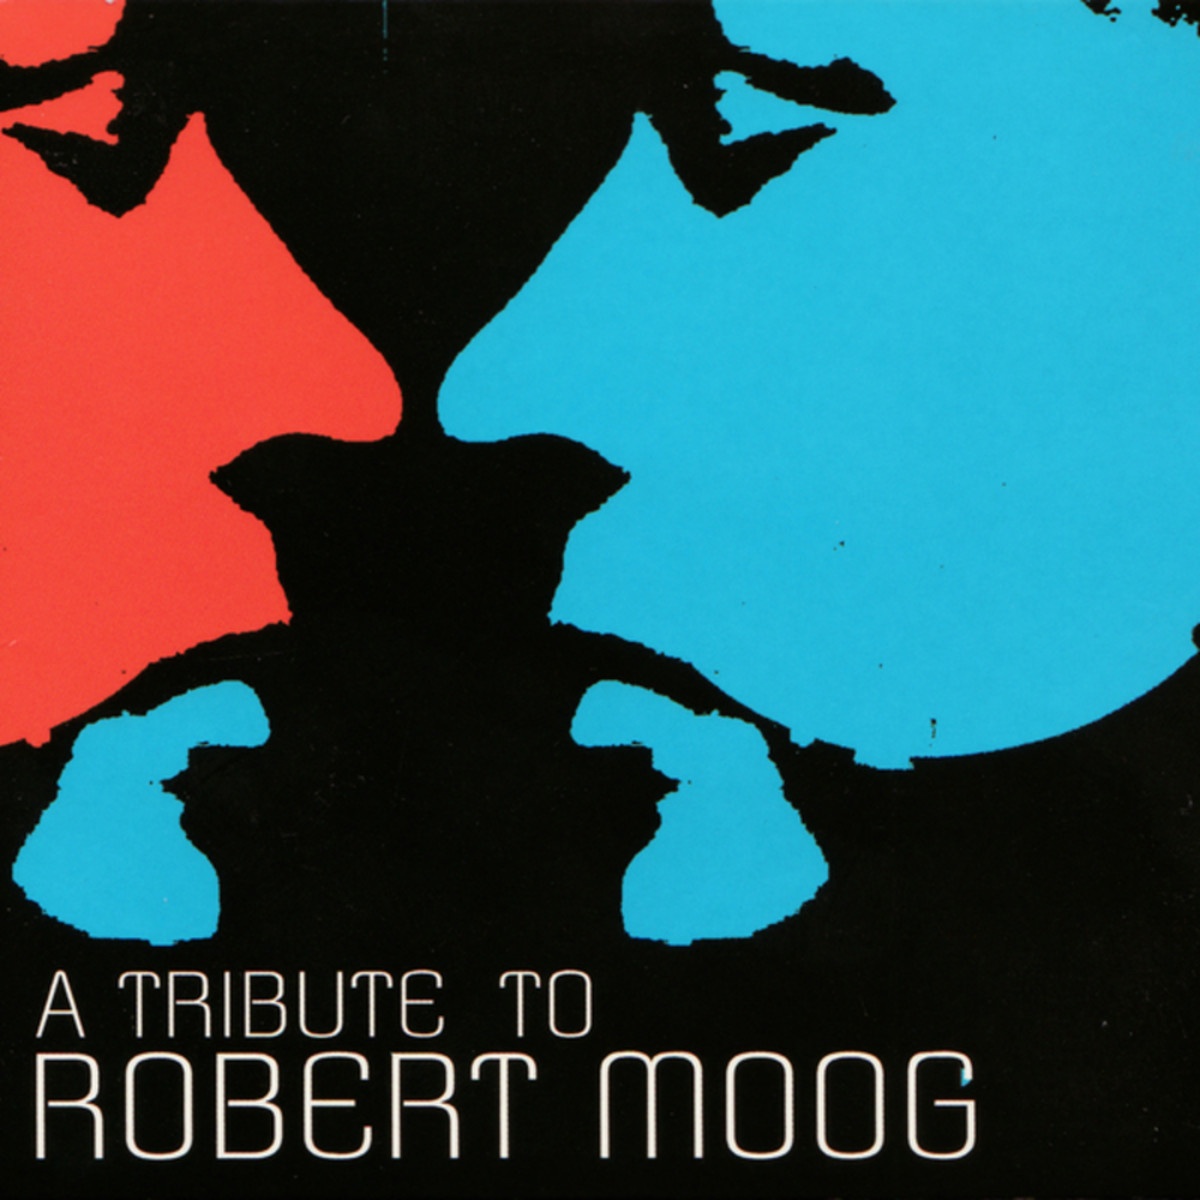 A tribute to Robert Moog